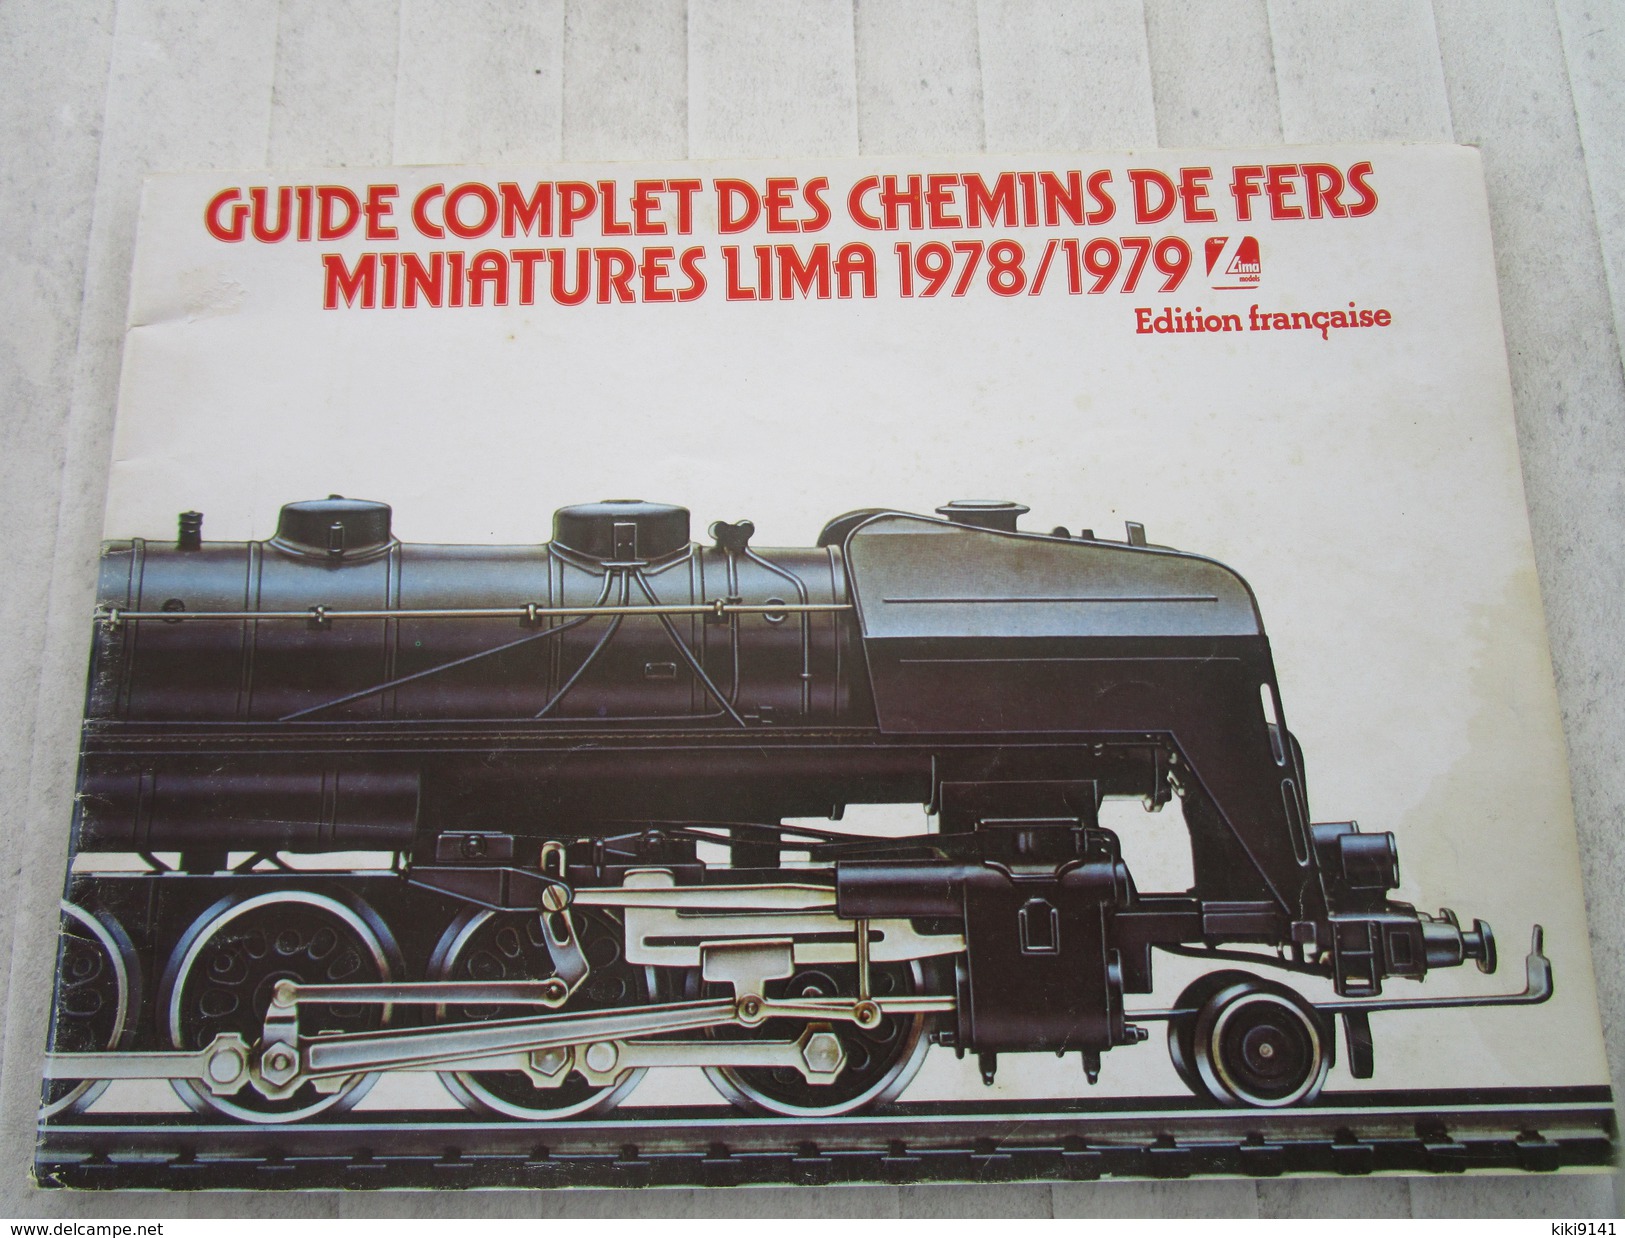 Guide Complet Des Chemins De Fer Miniatures LIMA 1978/1979 (84 Pages) - Français